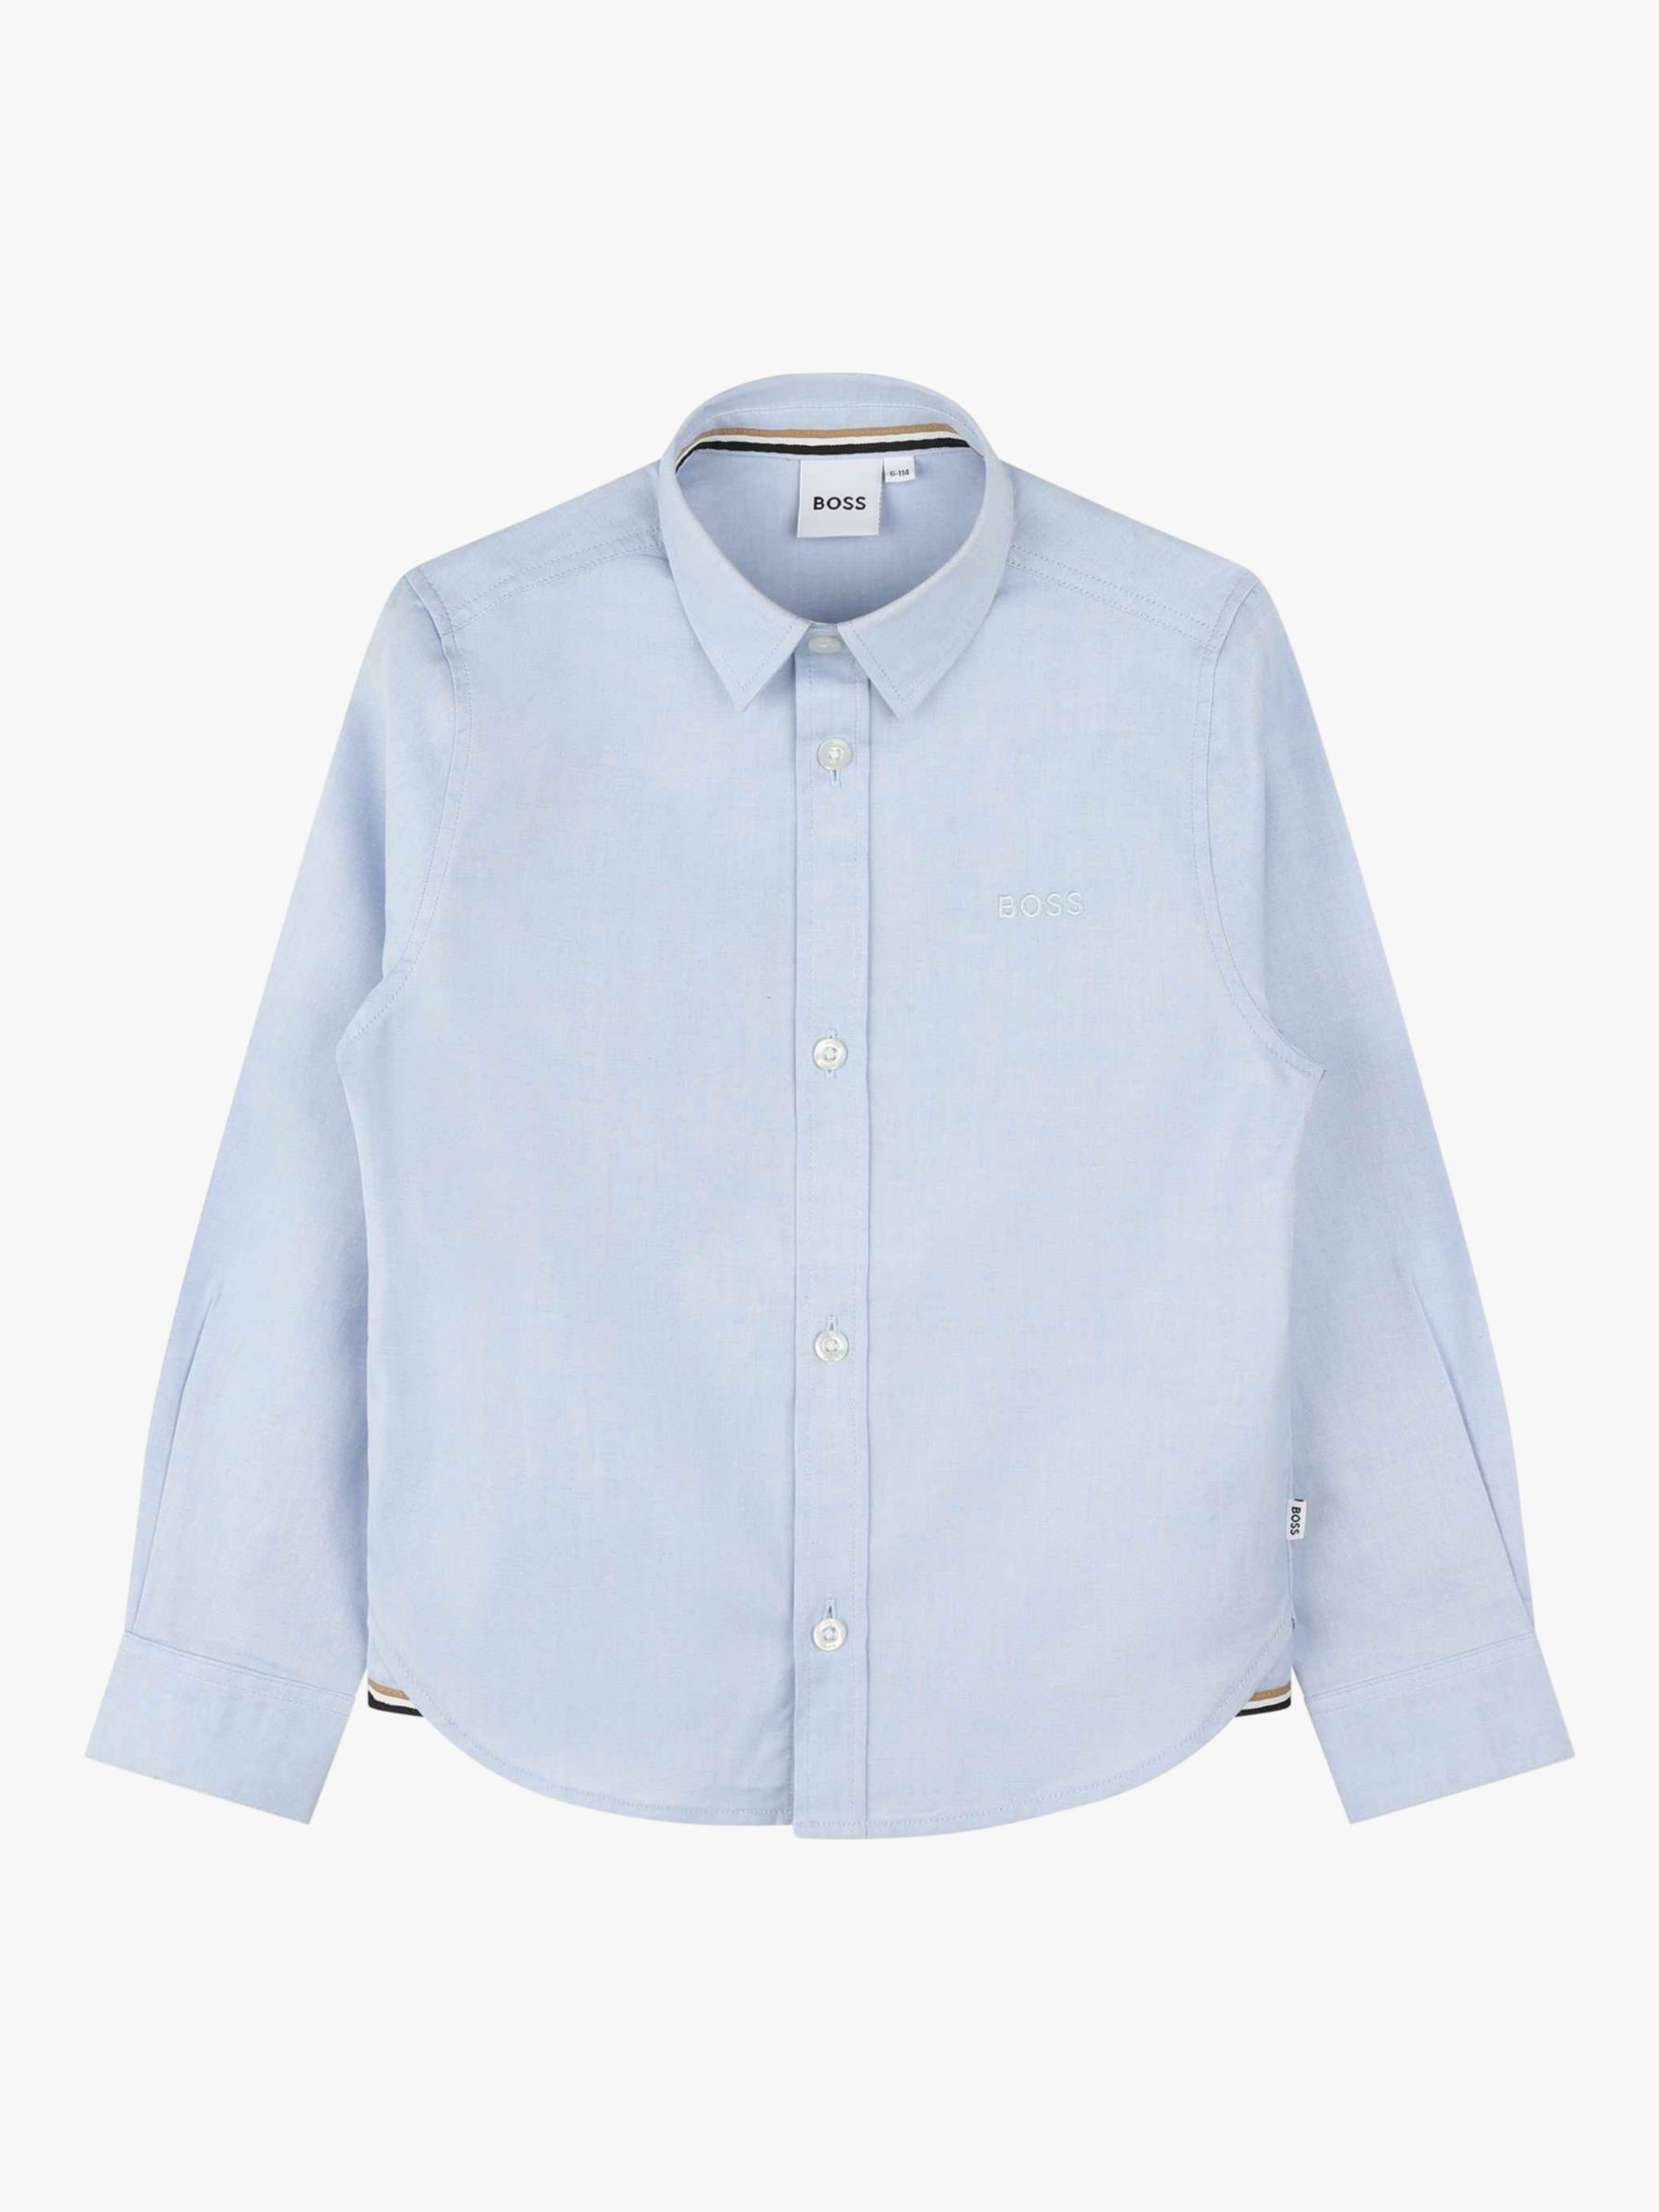 Детская оксфордская рубашка BOSS с длинным рукавом HUGO BOSS, светло-синий рубашка зауженная из ткани оксфорд с длинными рукавами xs синий